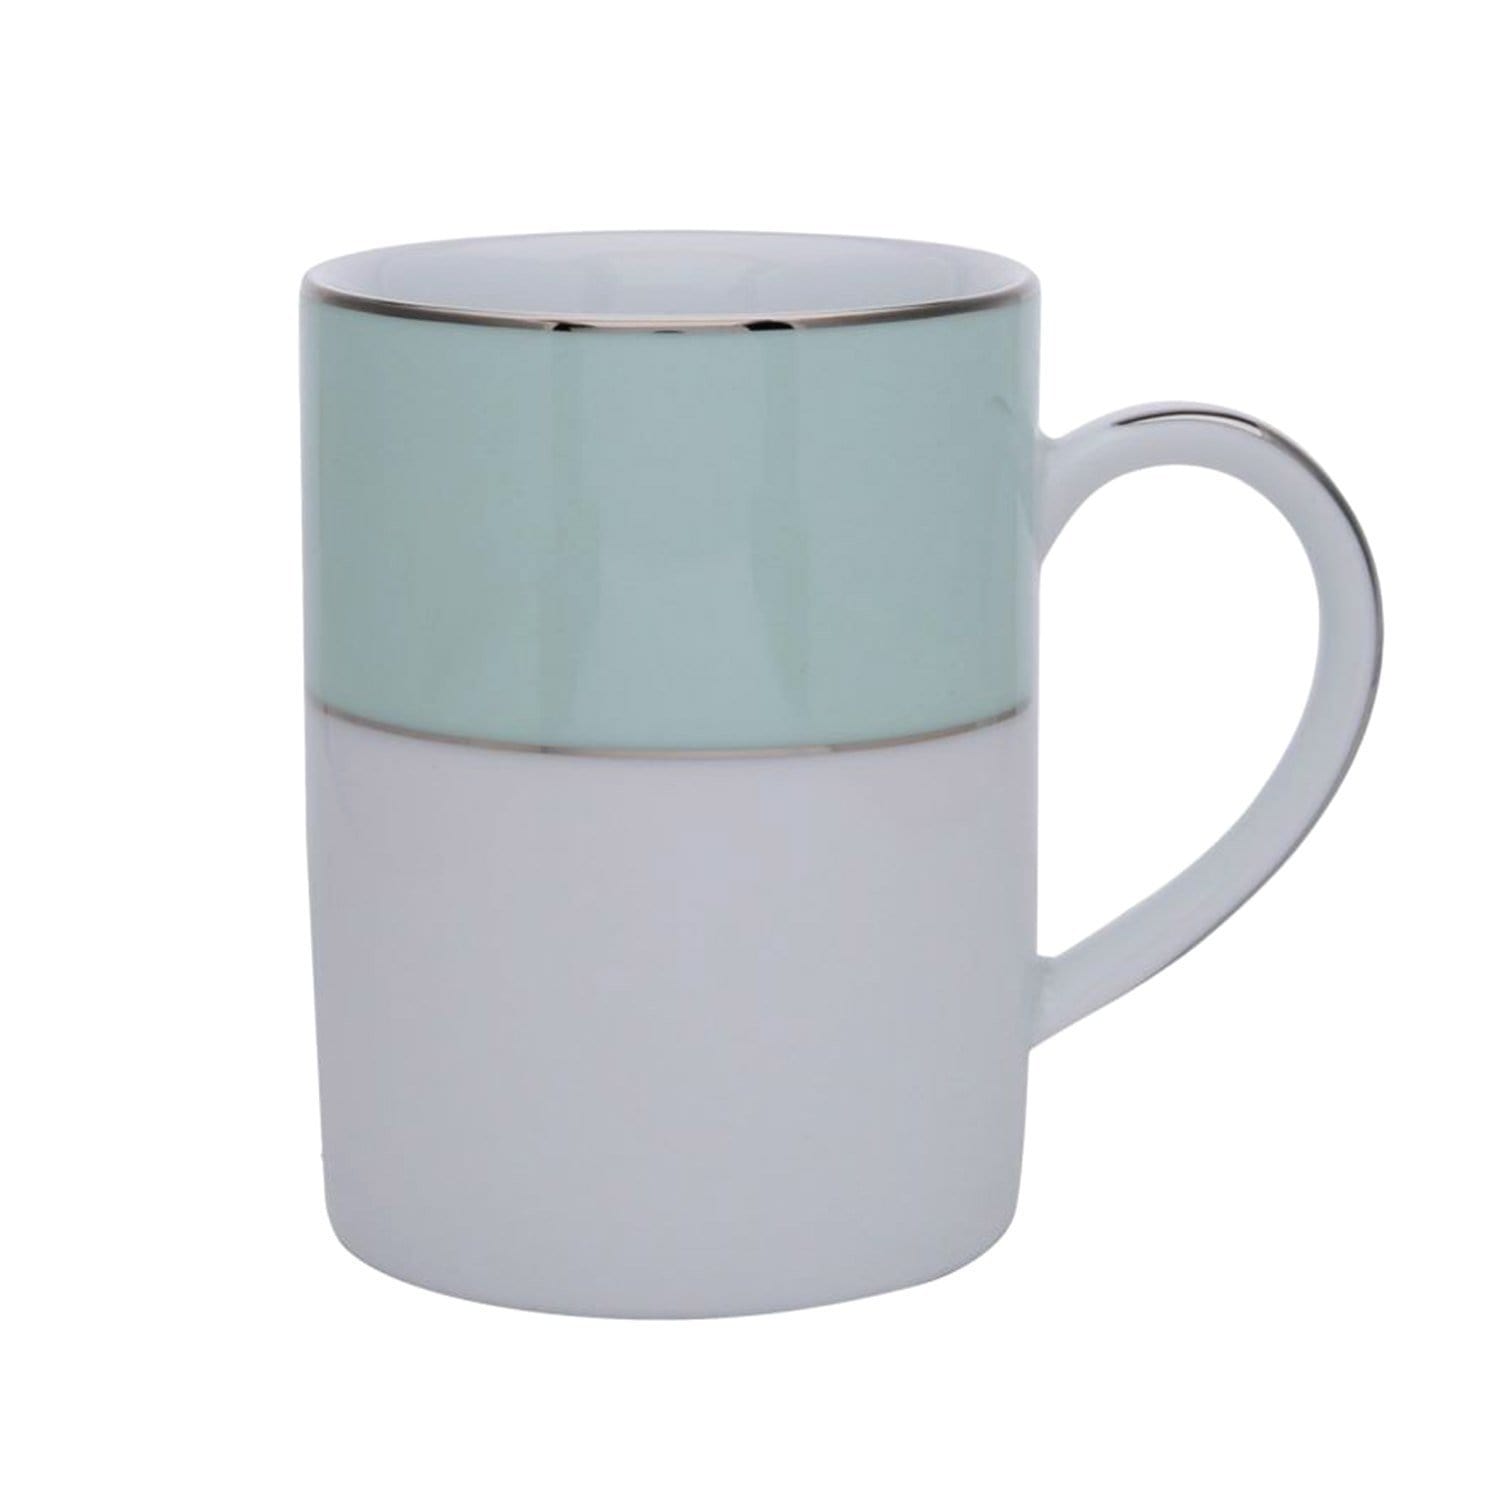 Dankotuwa Meldy Tea Mug - White and Light Green - MELDYG-0688 - Jashanmal Home